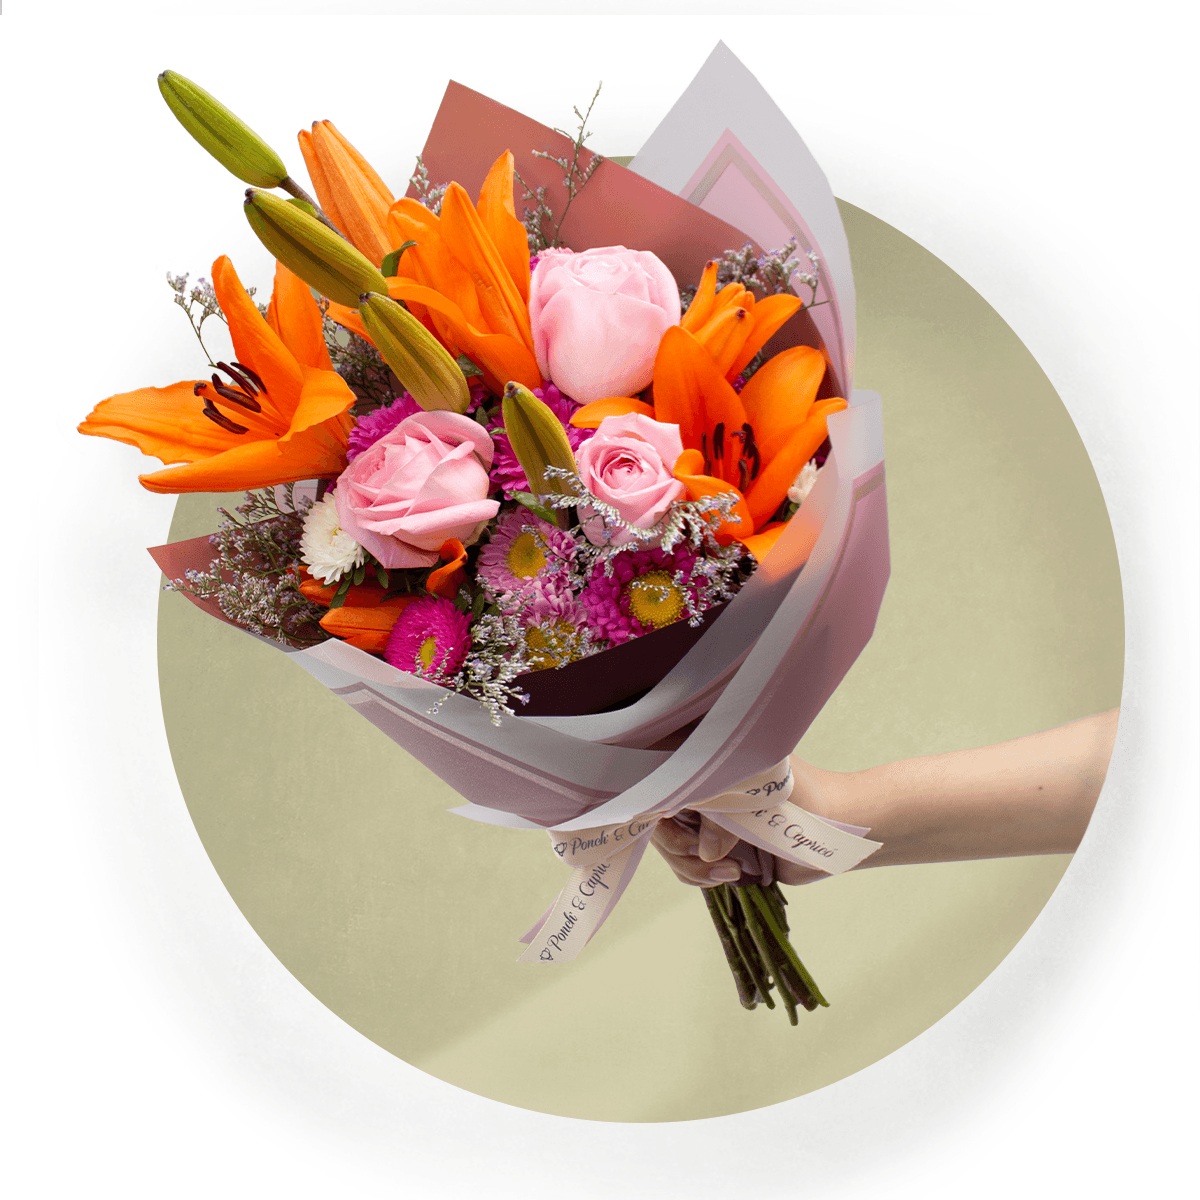 Envío mundial rápido Atado de mano bouquet de flores o plantas caja de  presentación-Plata Productos de moda Tide Flow Compras satisfechas  kvadratsushi.sk